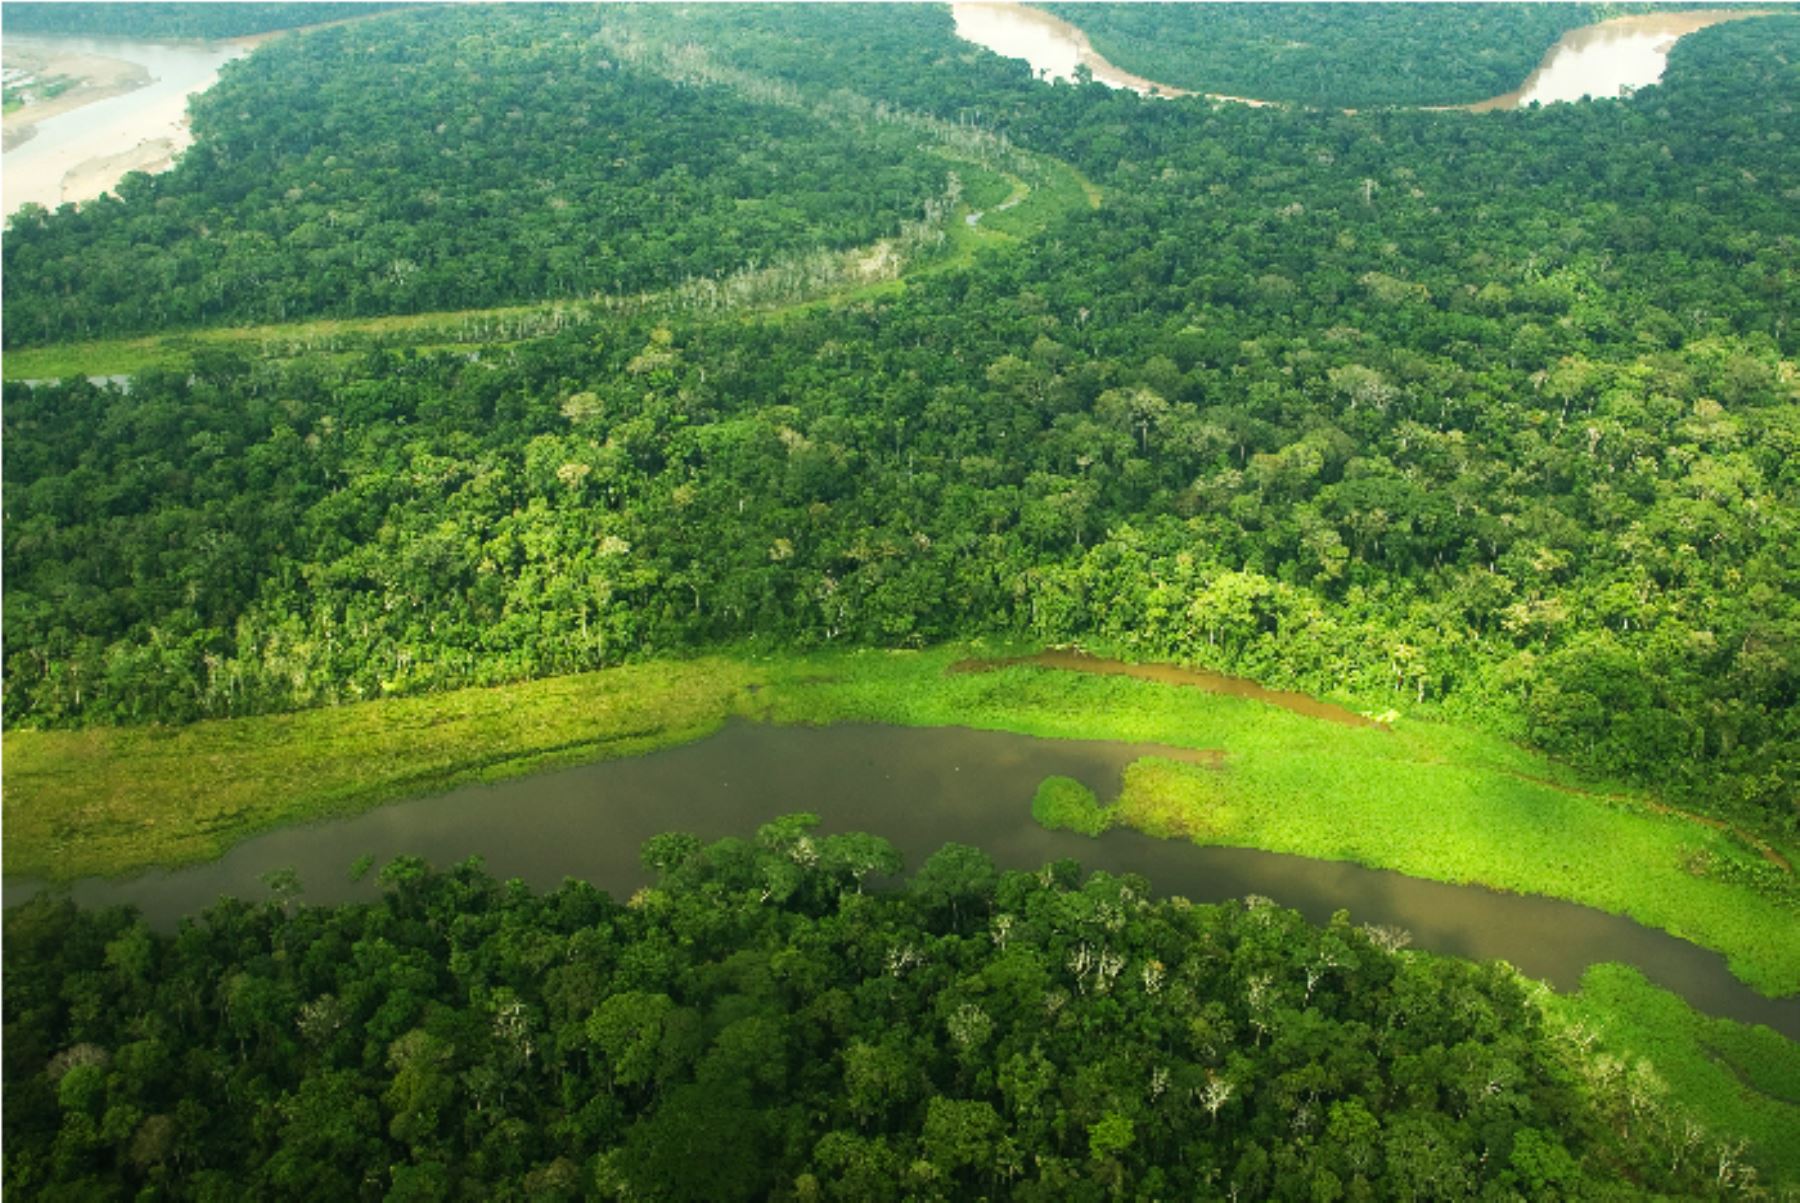 Once regiones del Perú lograron reducir deforestación de sus bosques amazónicos, destacó el Ministerio del Ambiente en la COP25. ANDINA/Archivo